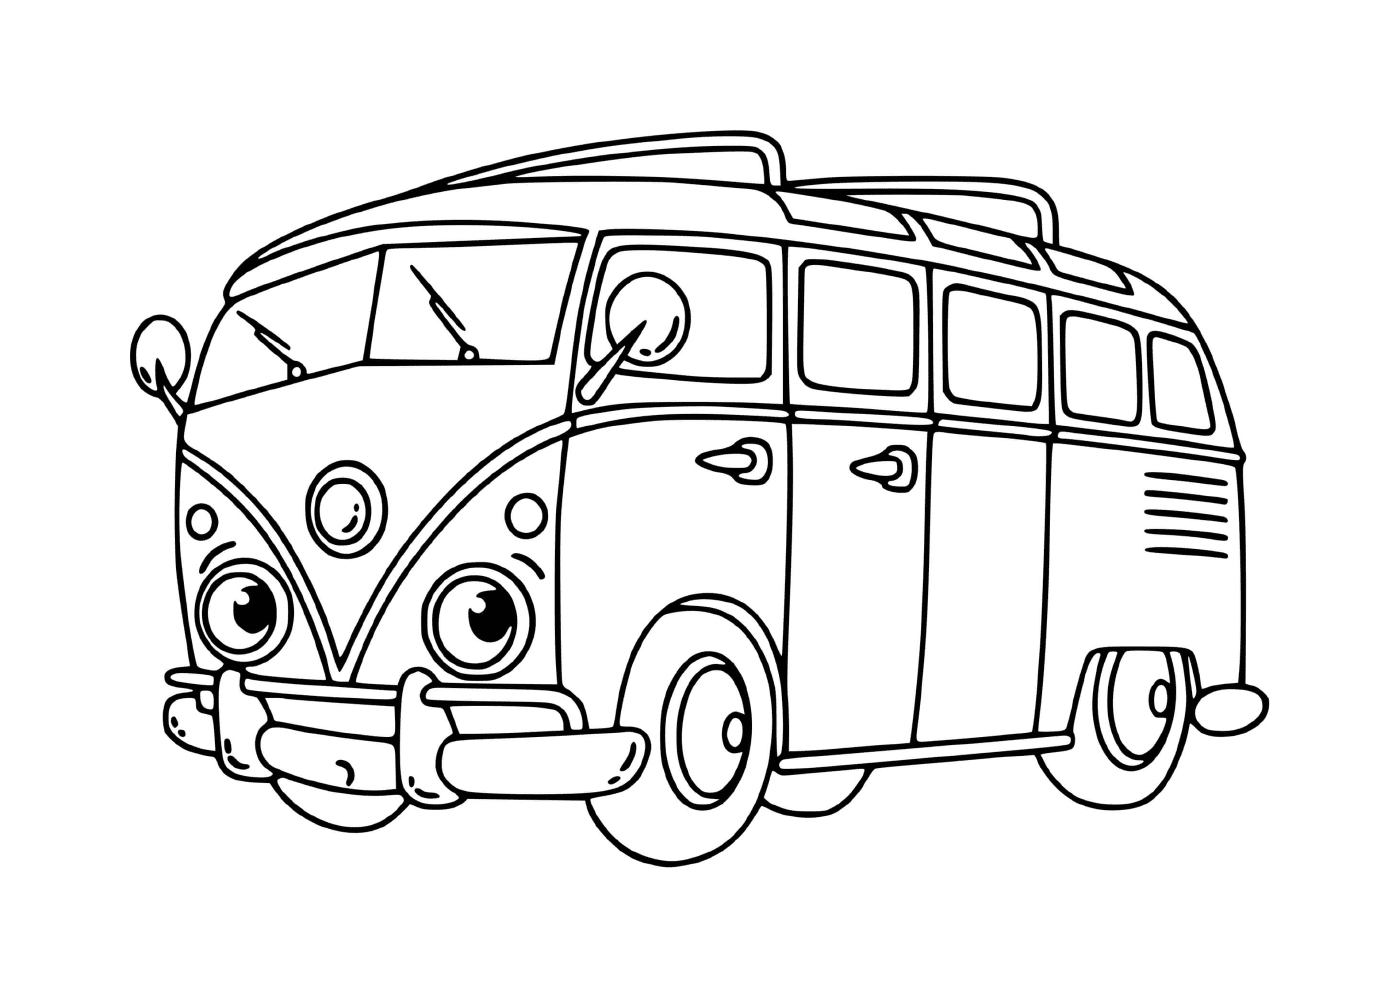  Um mini-ônibus Volkswagen 